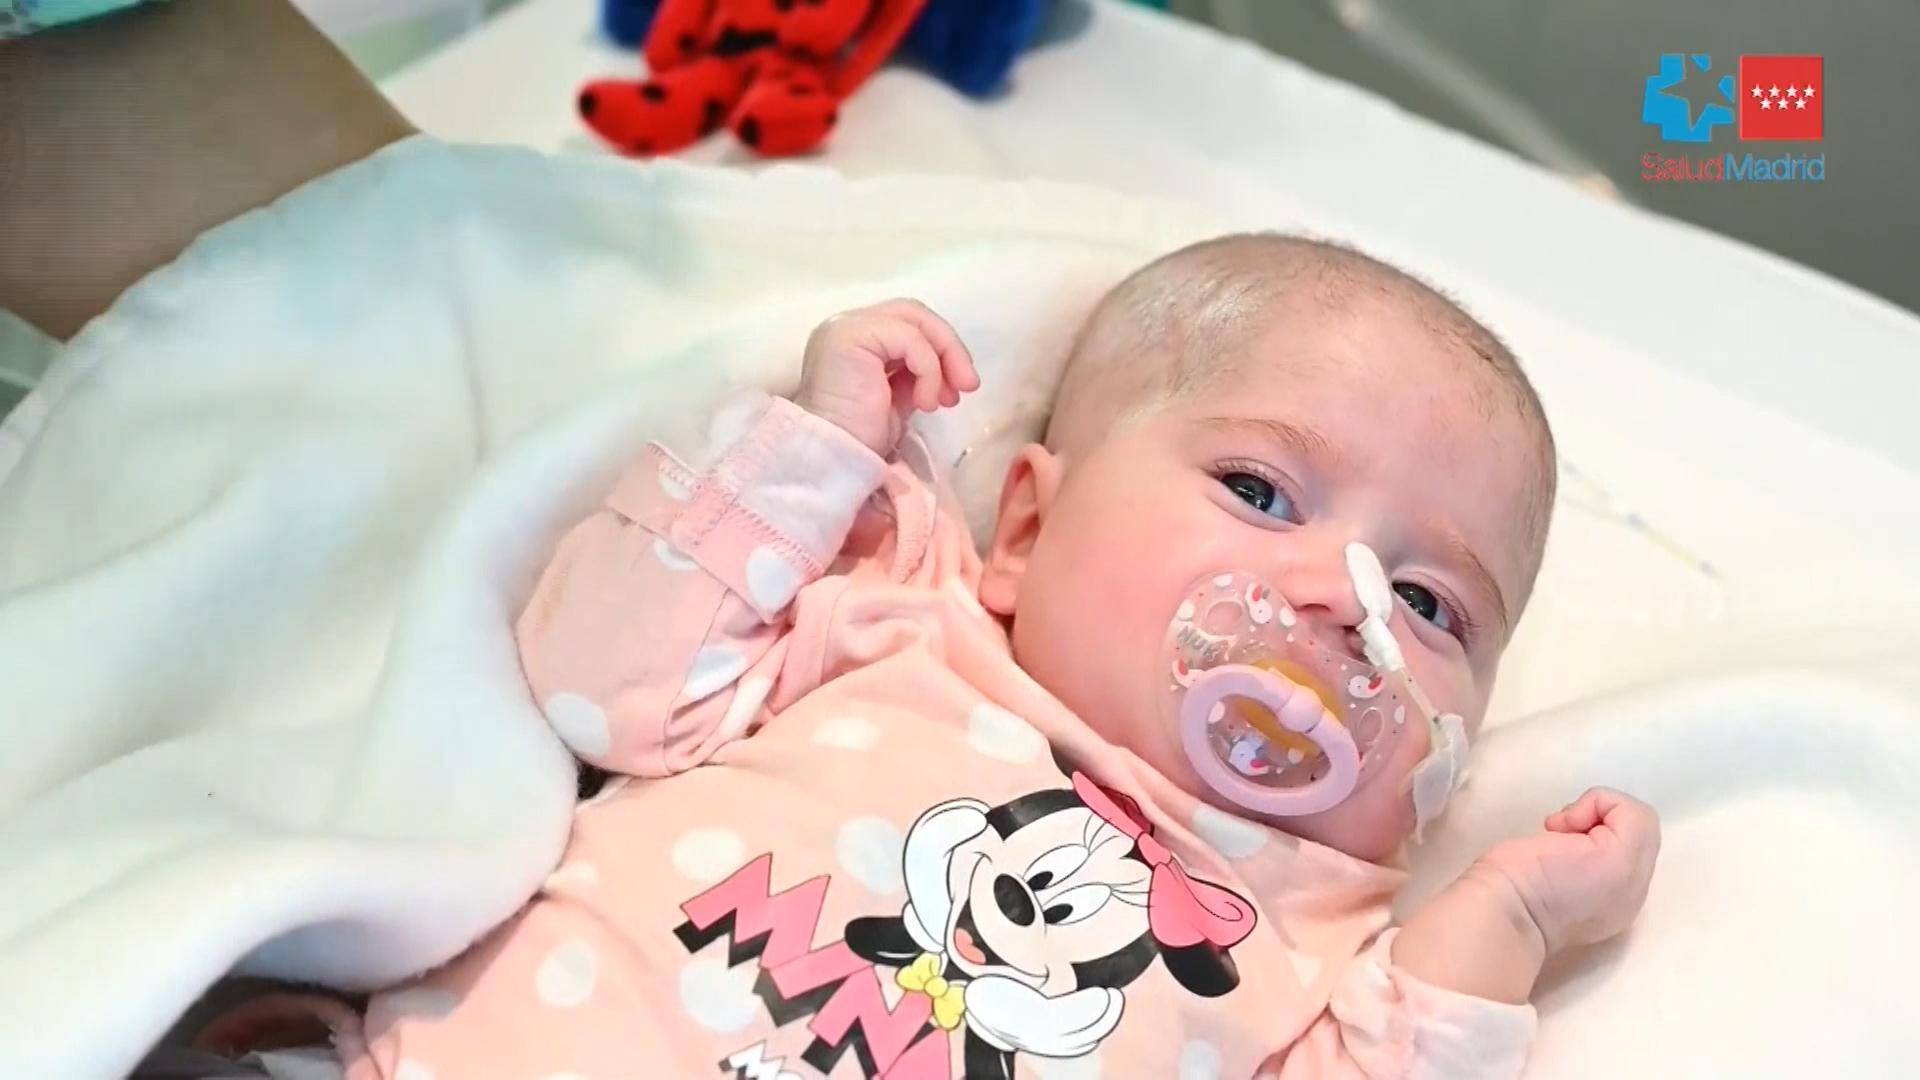 El Hospital Gregorio Marañón realiza un trasplante de corazón en asistolia y grupo sanguíneo incompatible a un bebé